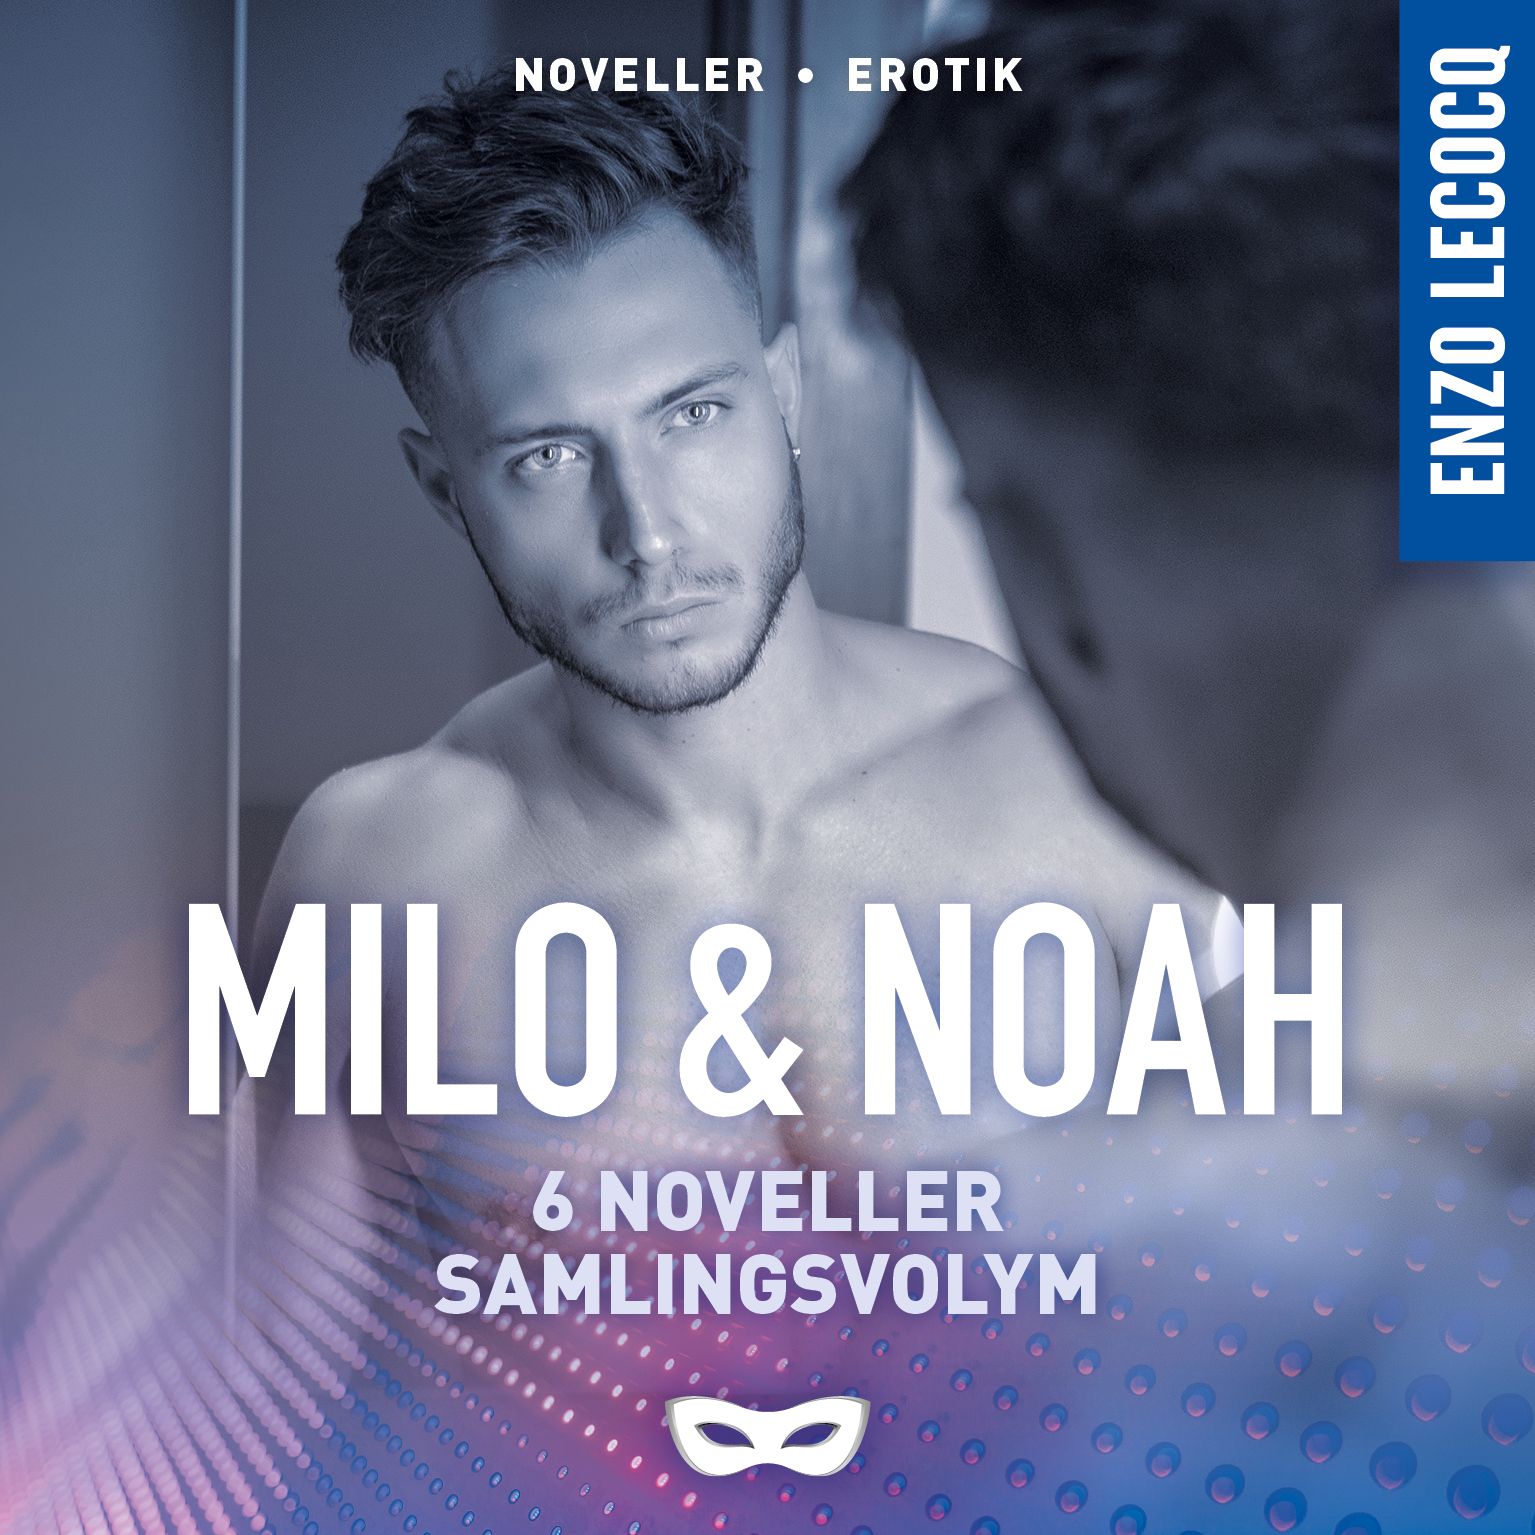 Milo & Noah samlingsvolym (6 noveller), ljudbok av Enzo Lecocq